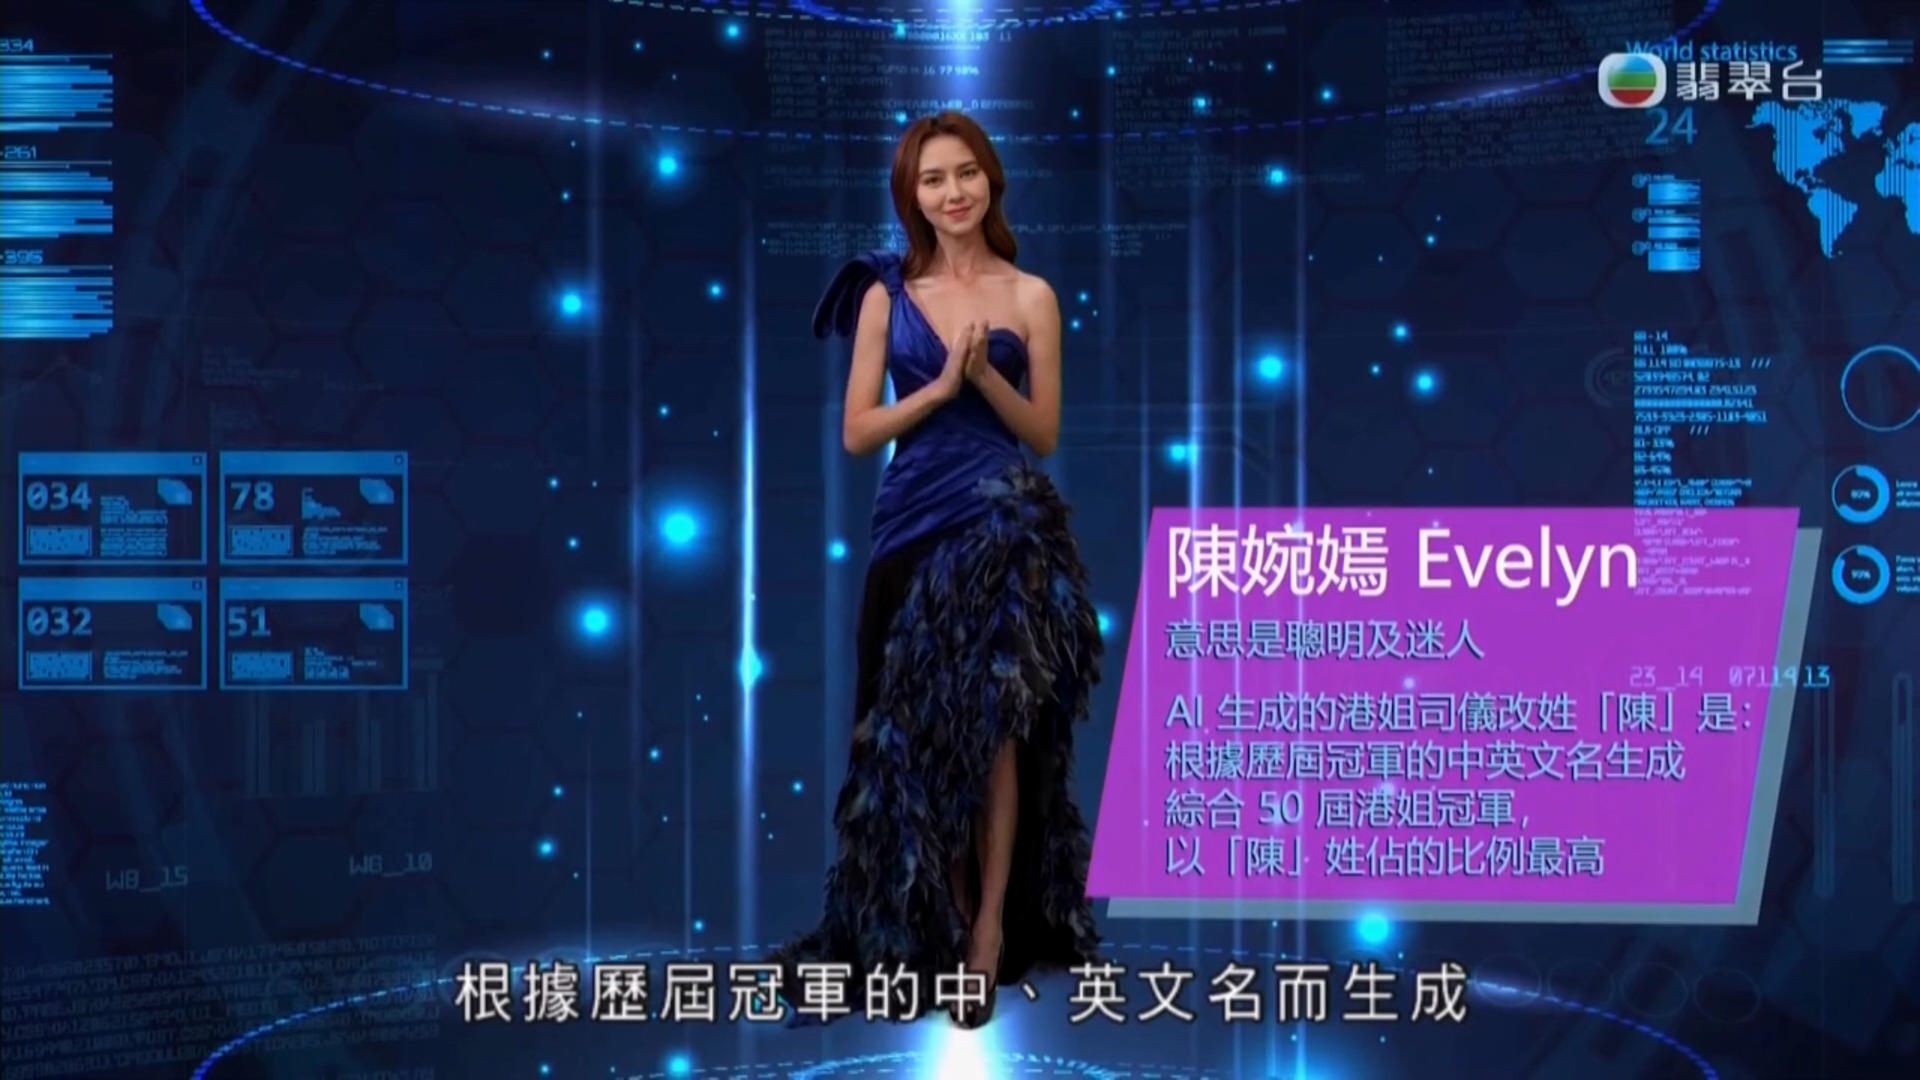 2023香港小姐競選 Hello MHK速報-Miss Hong Kong Pageant 2023 - Express